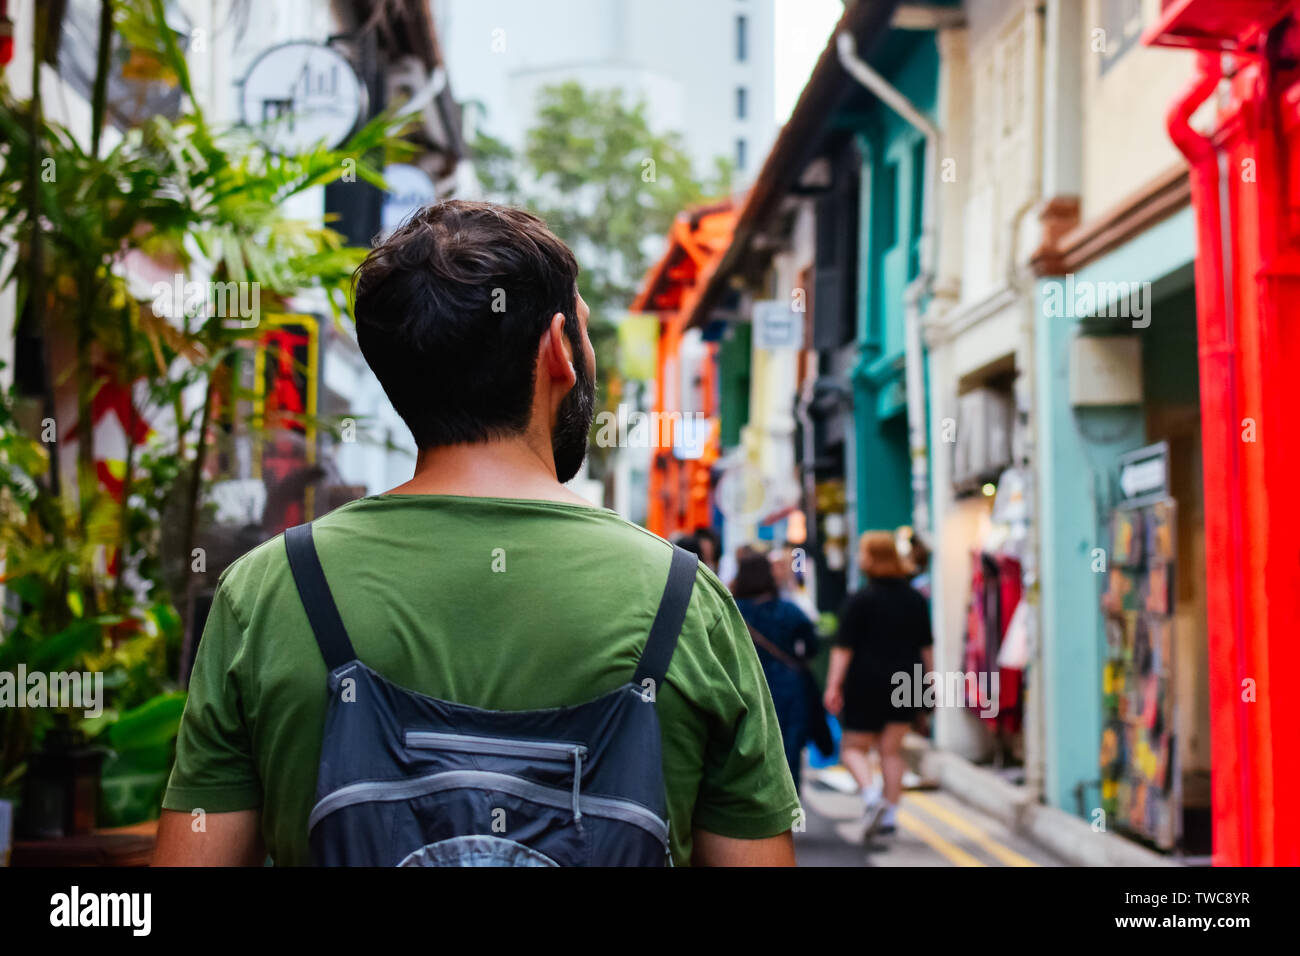 Jeune homme backpacker dos faire une promenade découverte d'une ville Banque D'Images